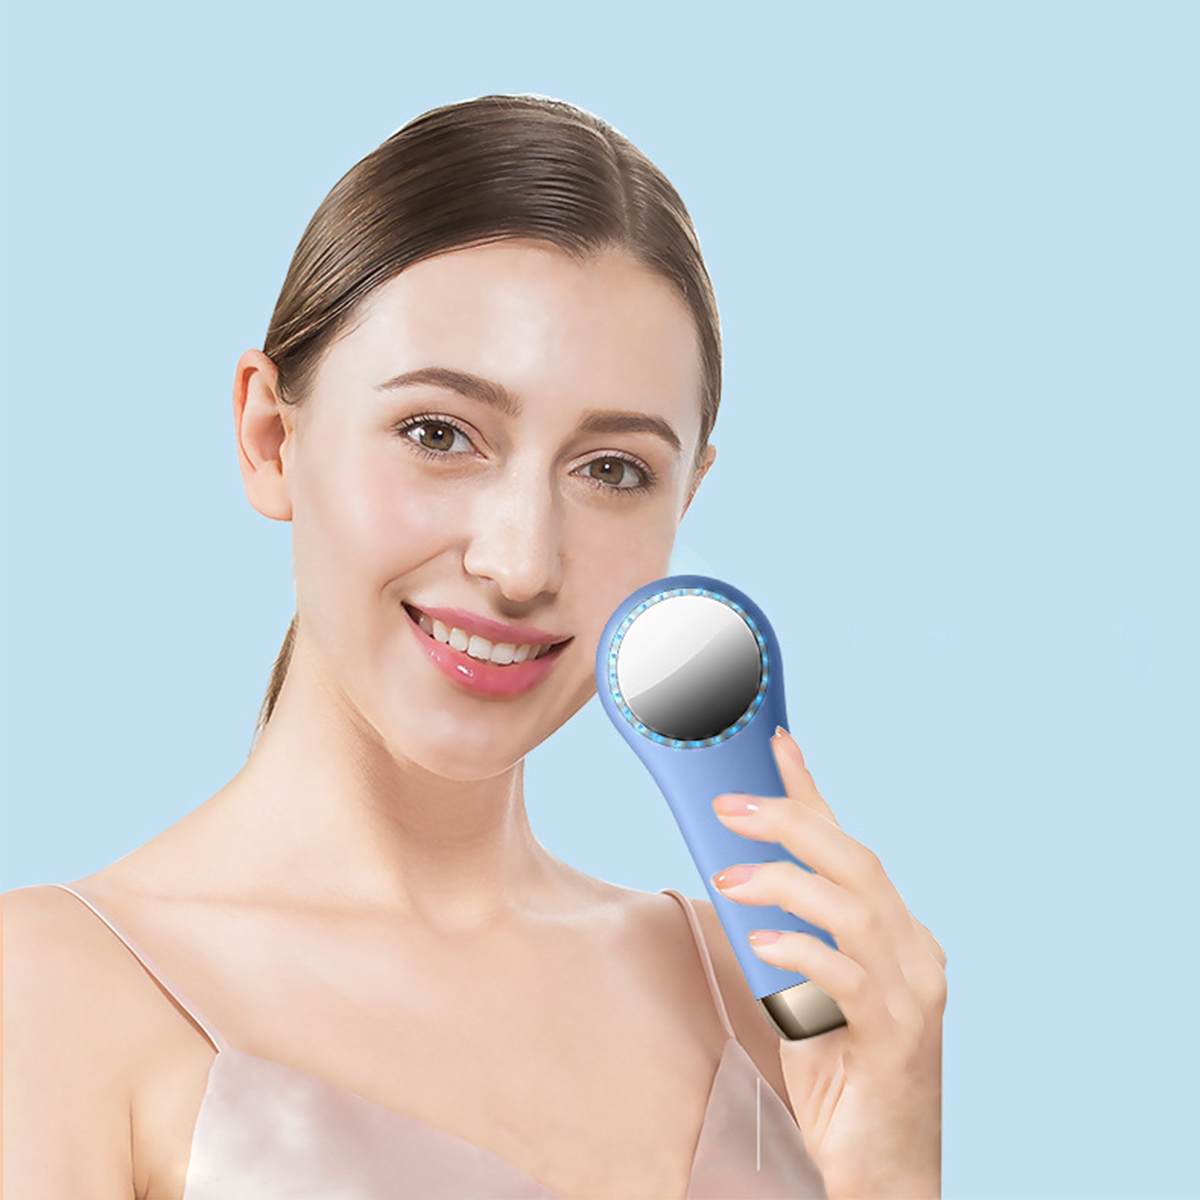 Rot-Blau-Licht SHAOKE Wärme-Kältefunktion Gesichtswaschgerät, Schwarz Silikongel Vibration Gesichtsreinigungsbürste mit